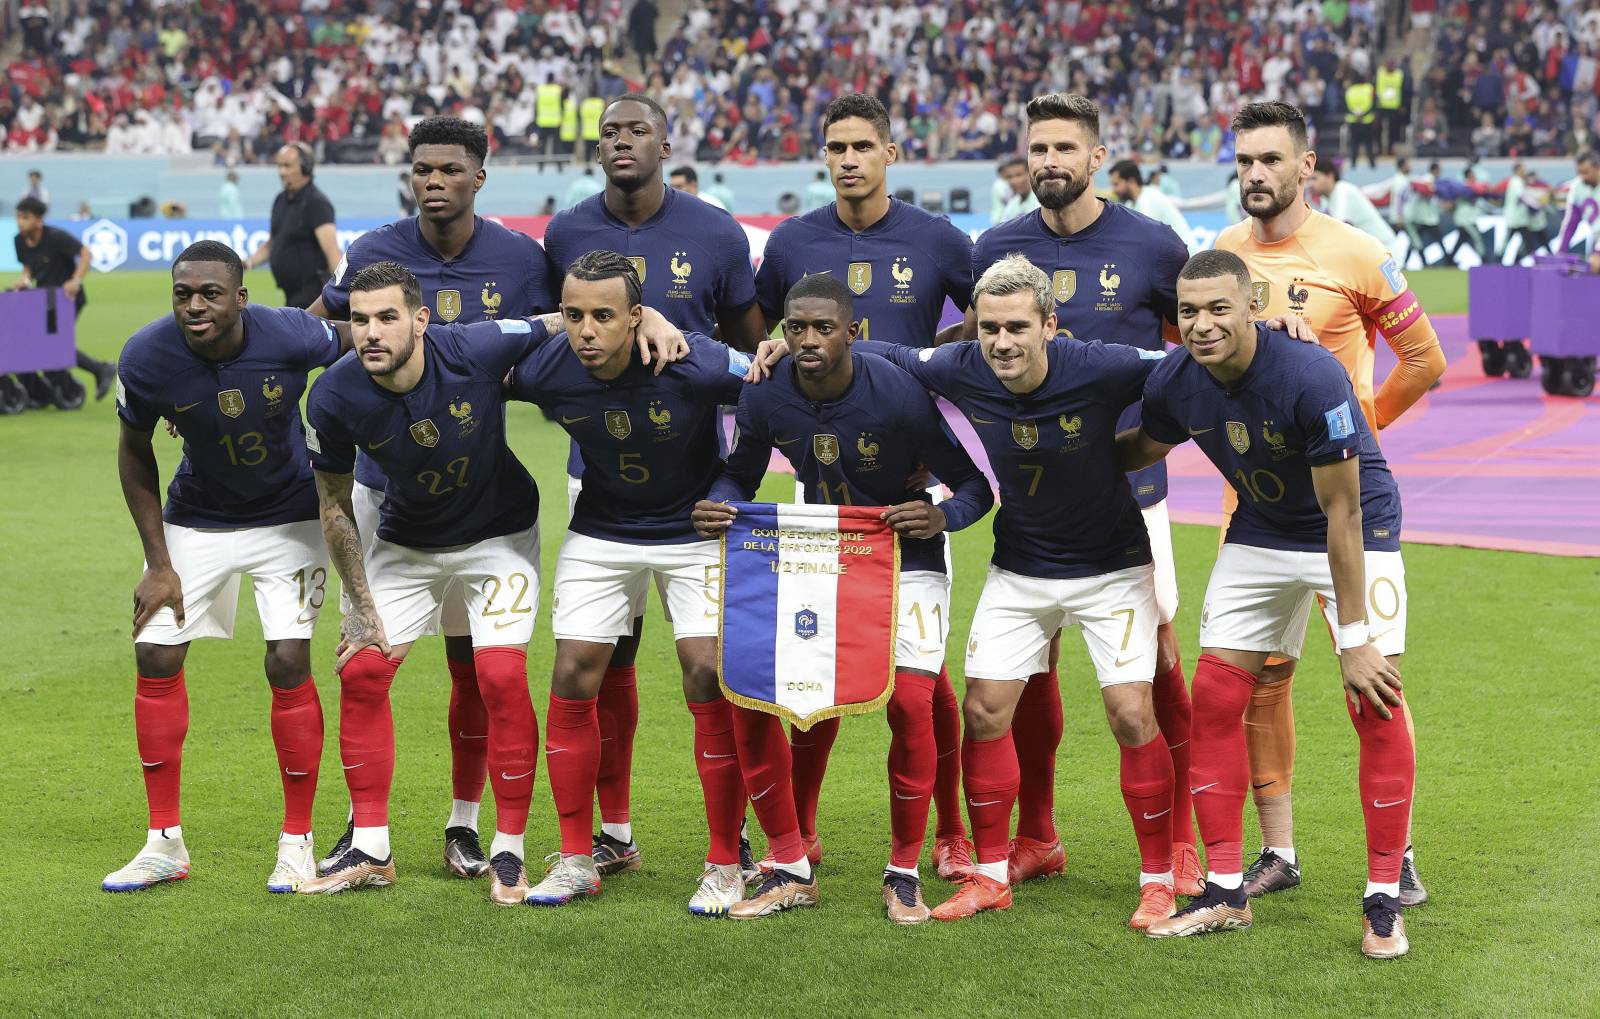 сборная франции по футболу 2018